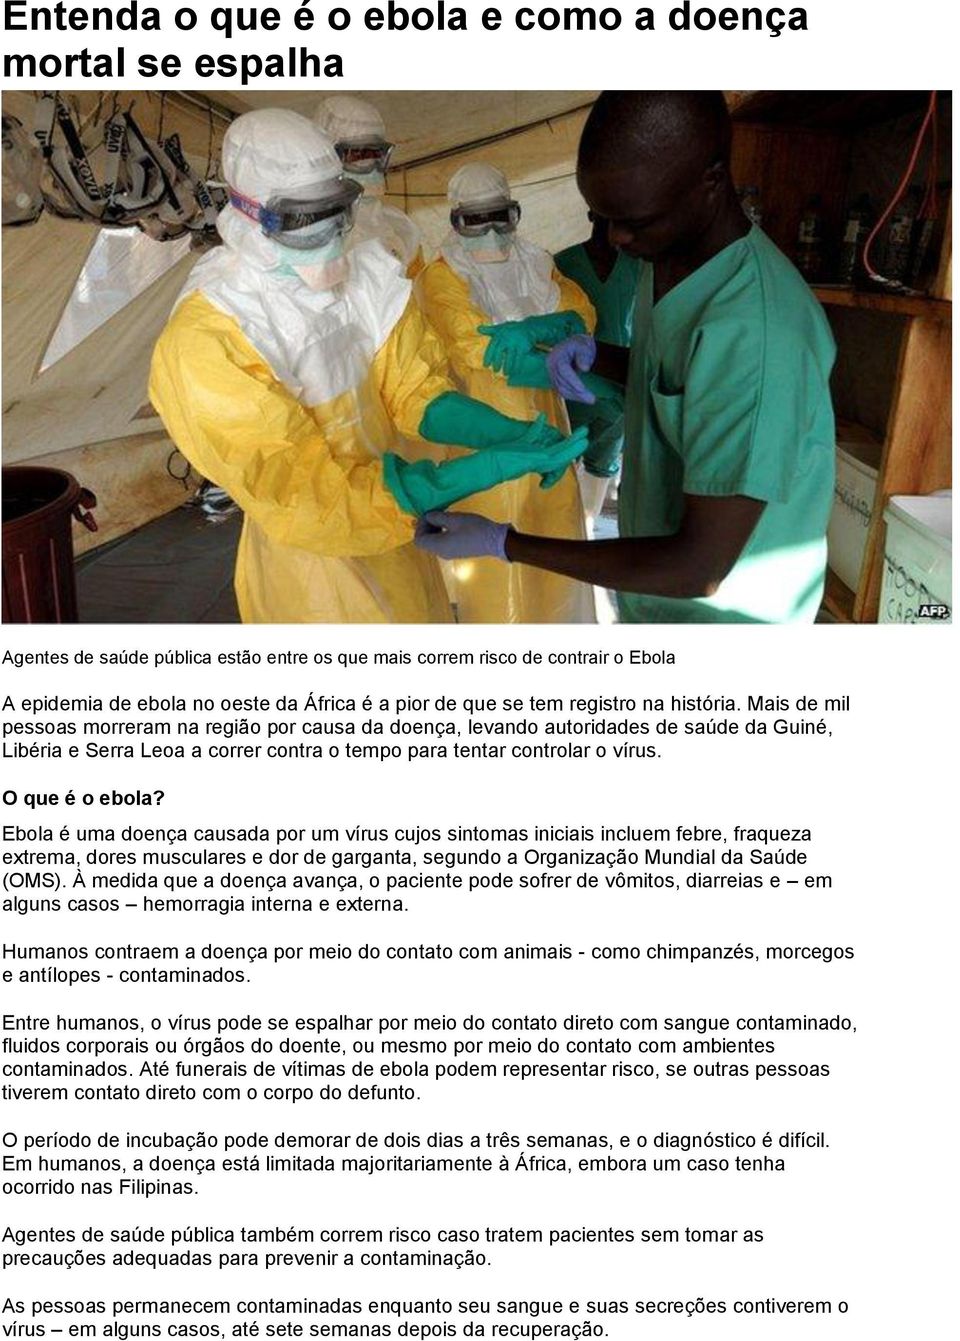 O que é o ebola? Ebola é uma doença causada por um vírus cujos sintomas iniciais incluem febre, fraqueza extrema, dores musculares e dor de garganta, segundo a Organização Mundial da Saúde (OMS).